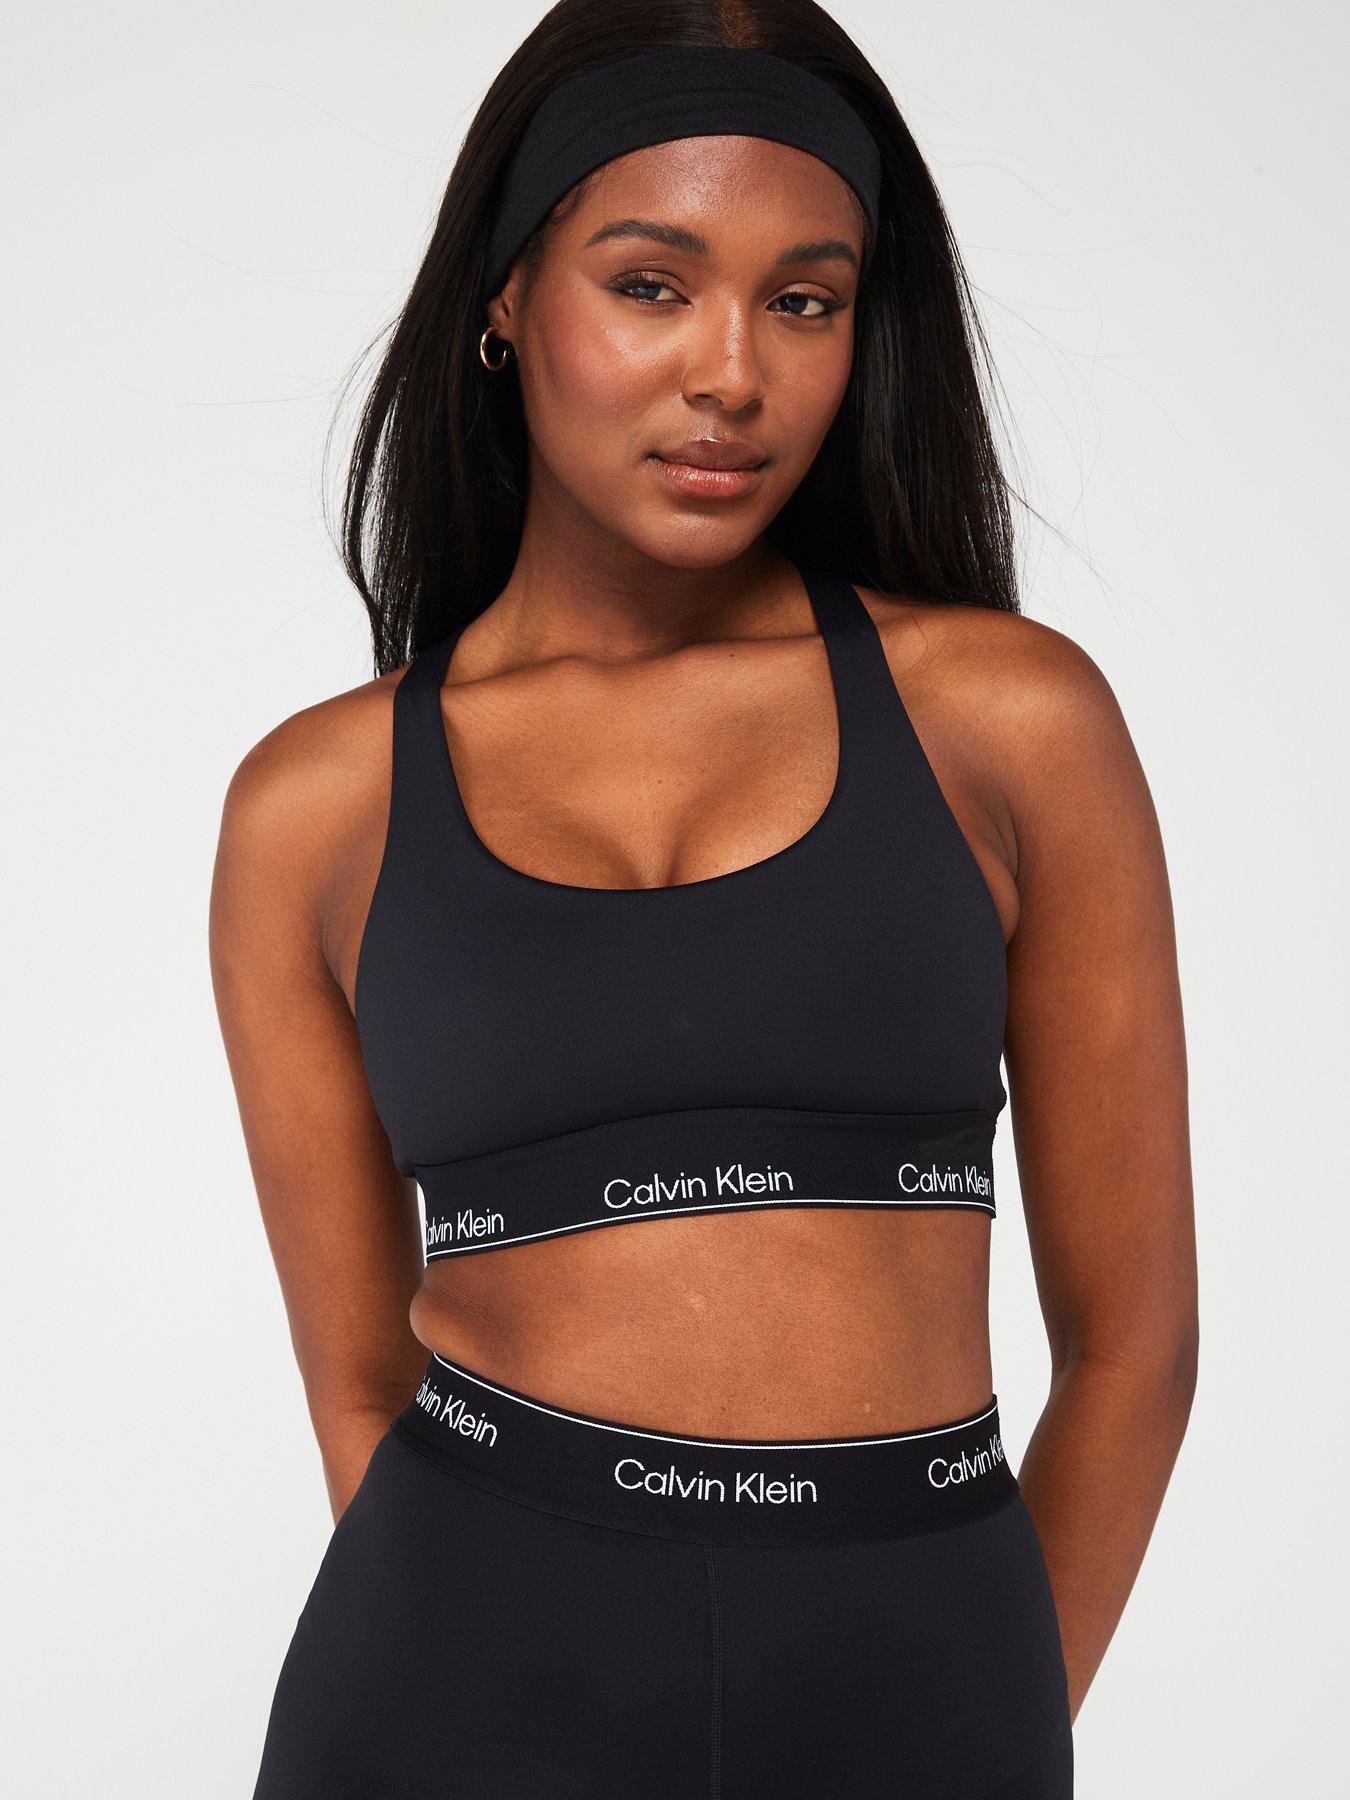 Calvin Klein Performance Medium Support Sports Bra - Black